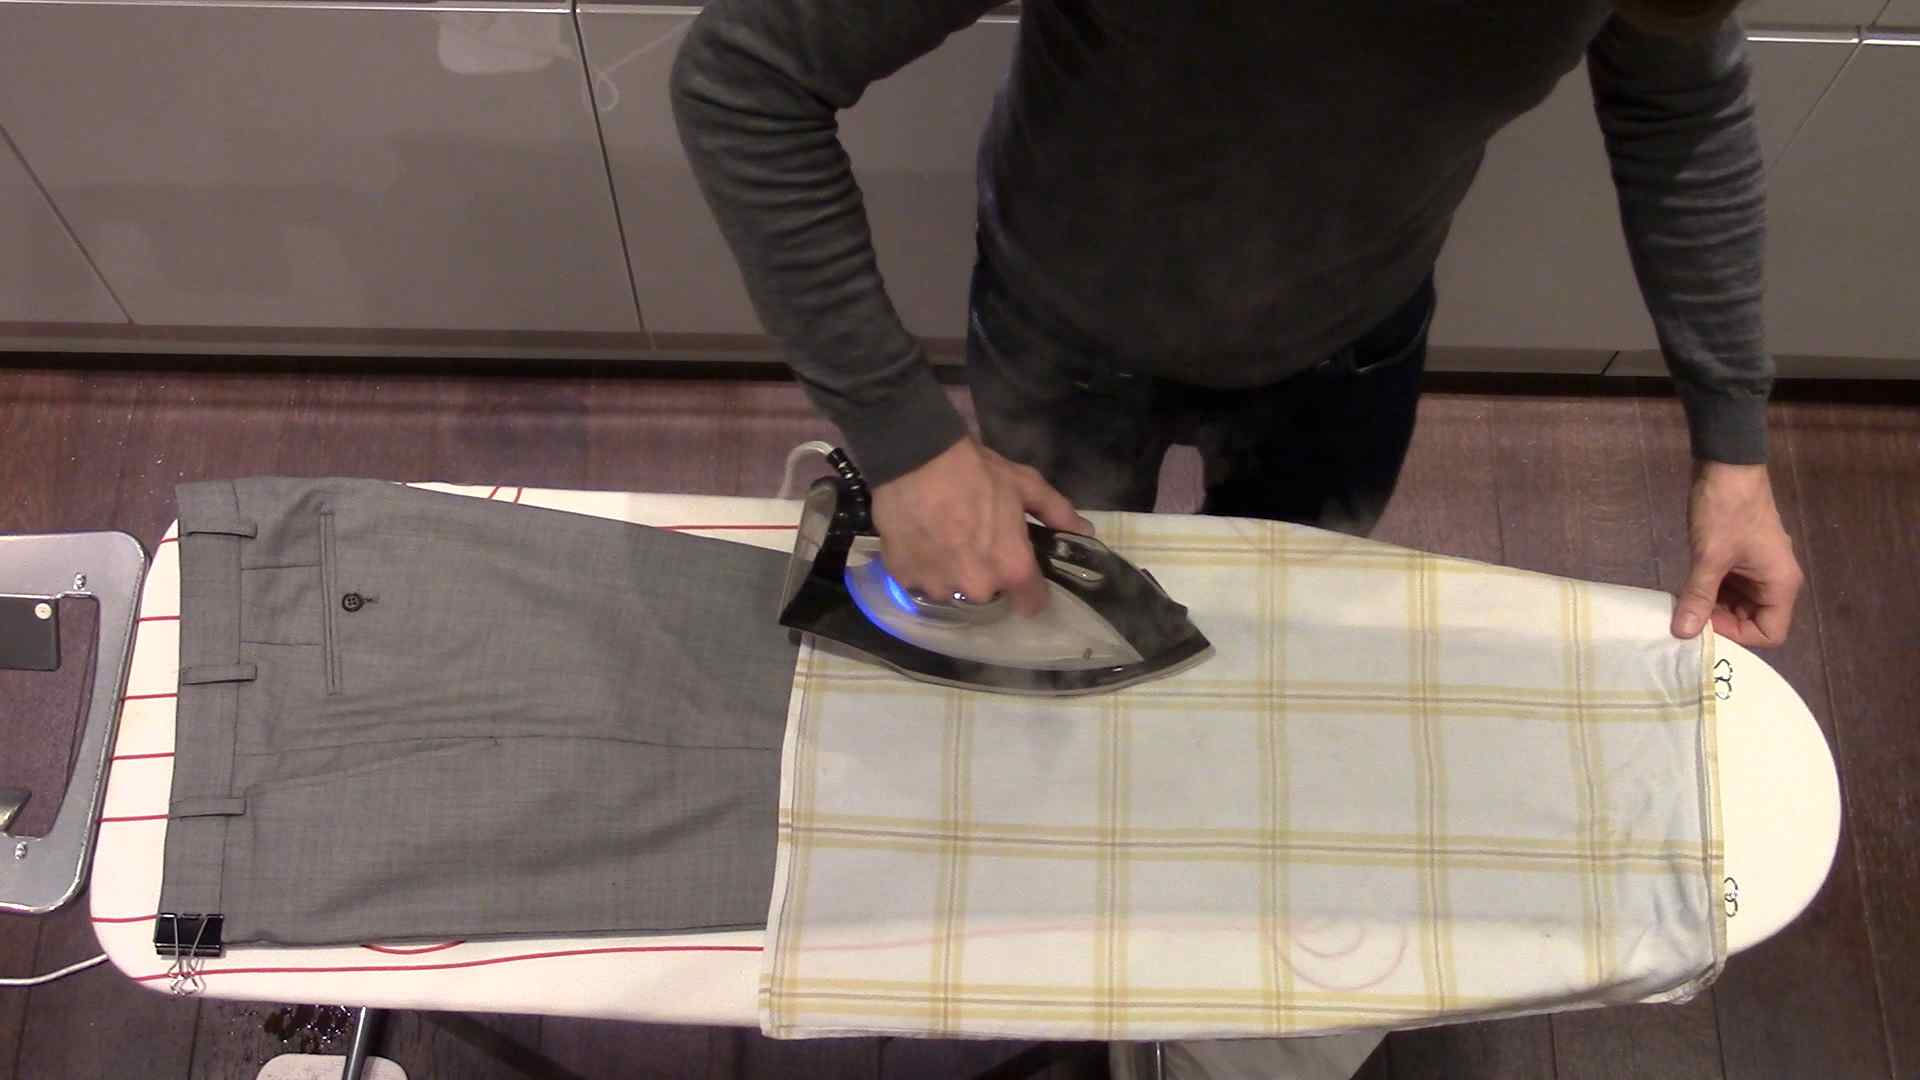 Как правильно гладить брюки мужские пошаговое